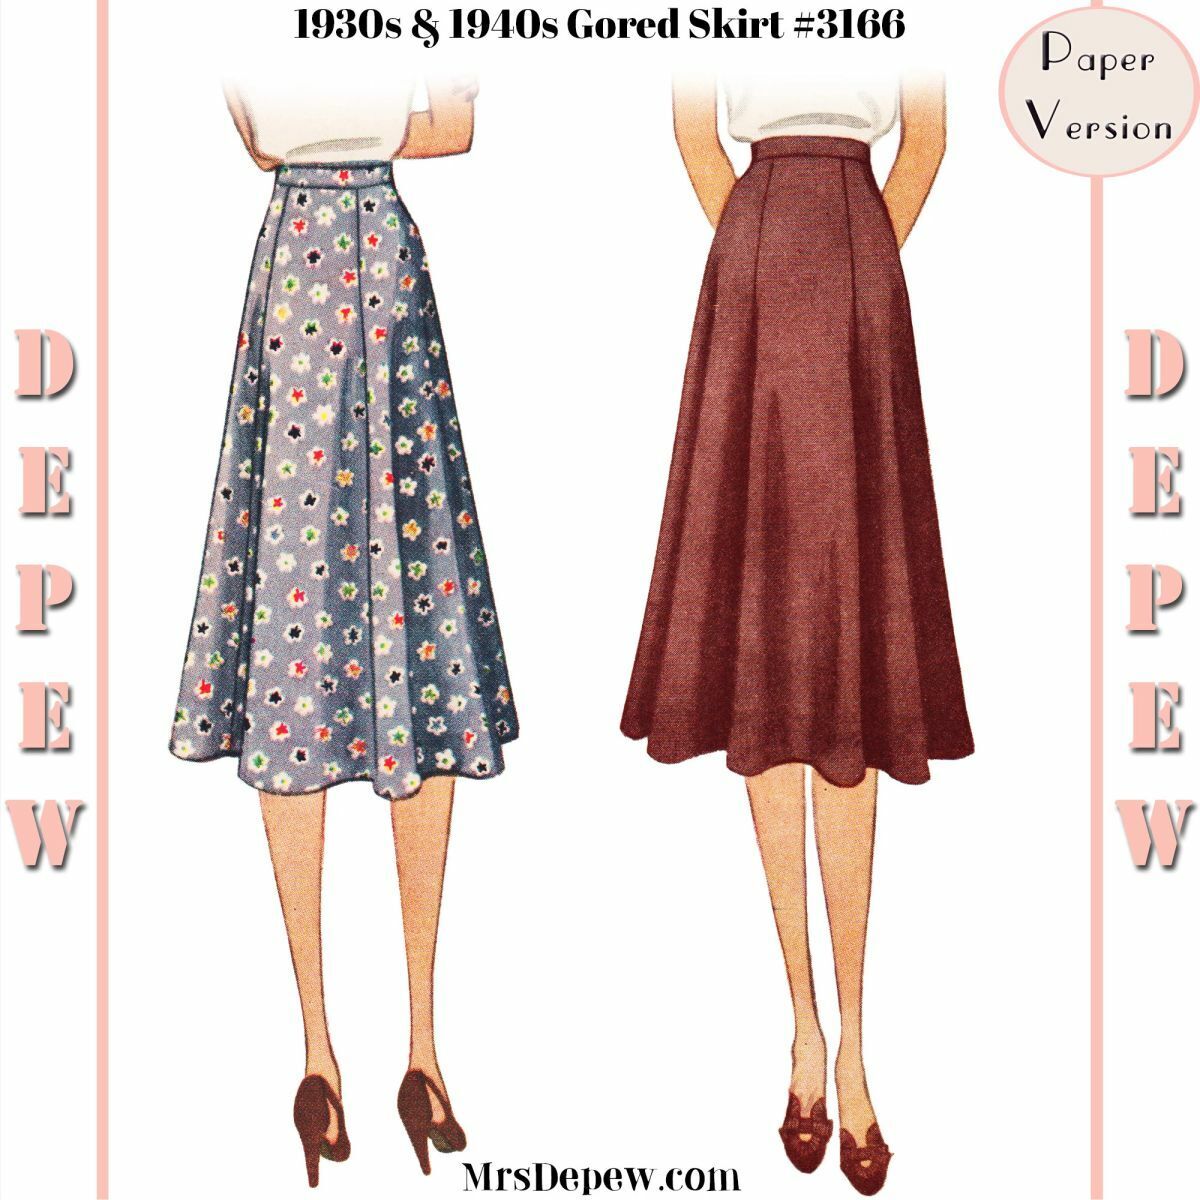 Vintage Sewing Pattern Ladies\' 1930s 1940s Skirt 24-38” Waist #3166